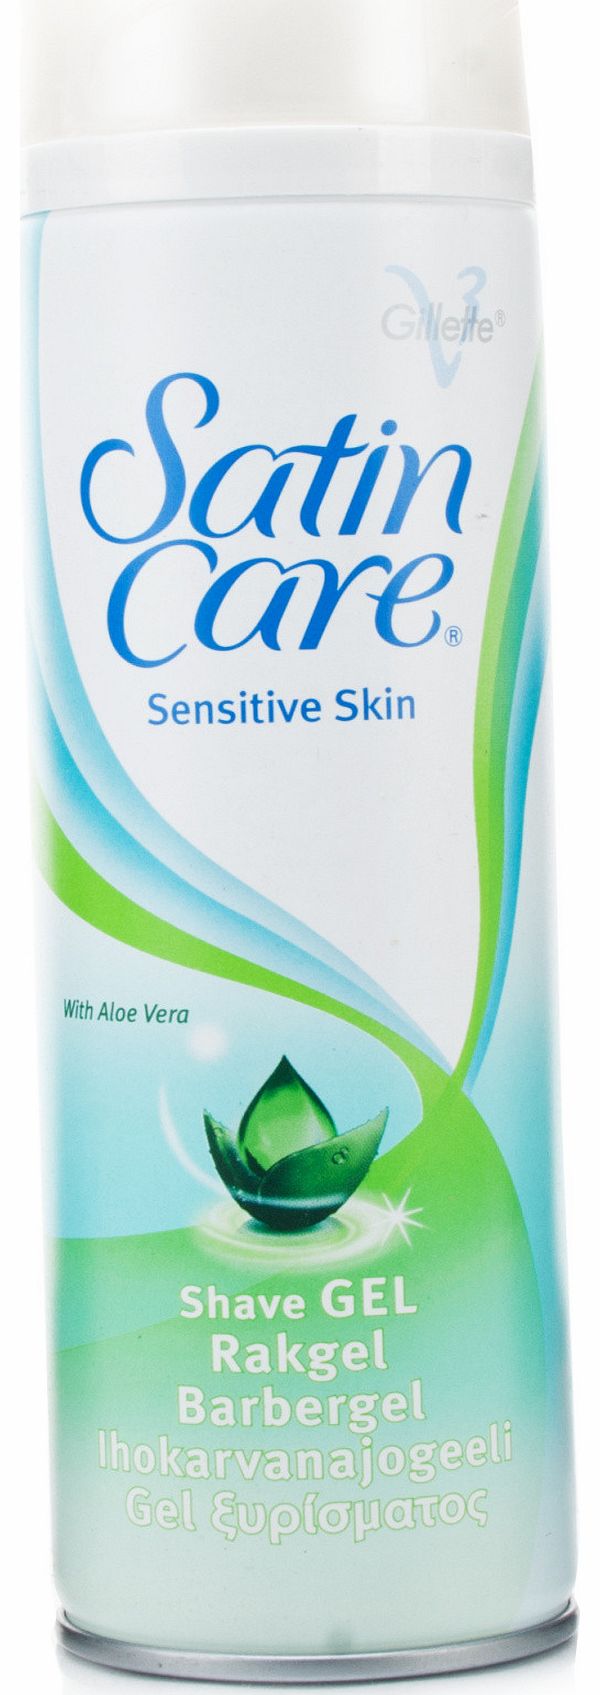 Gillette Satin Care Sensitive Skin Shave Gel